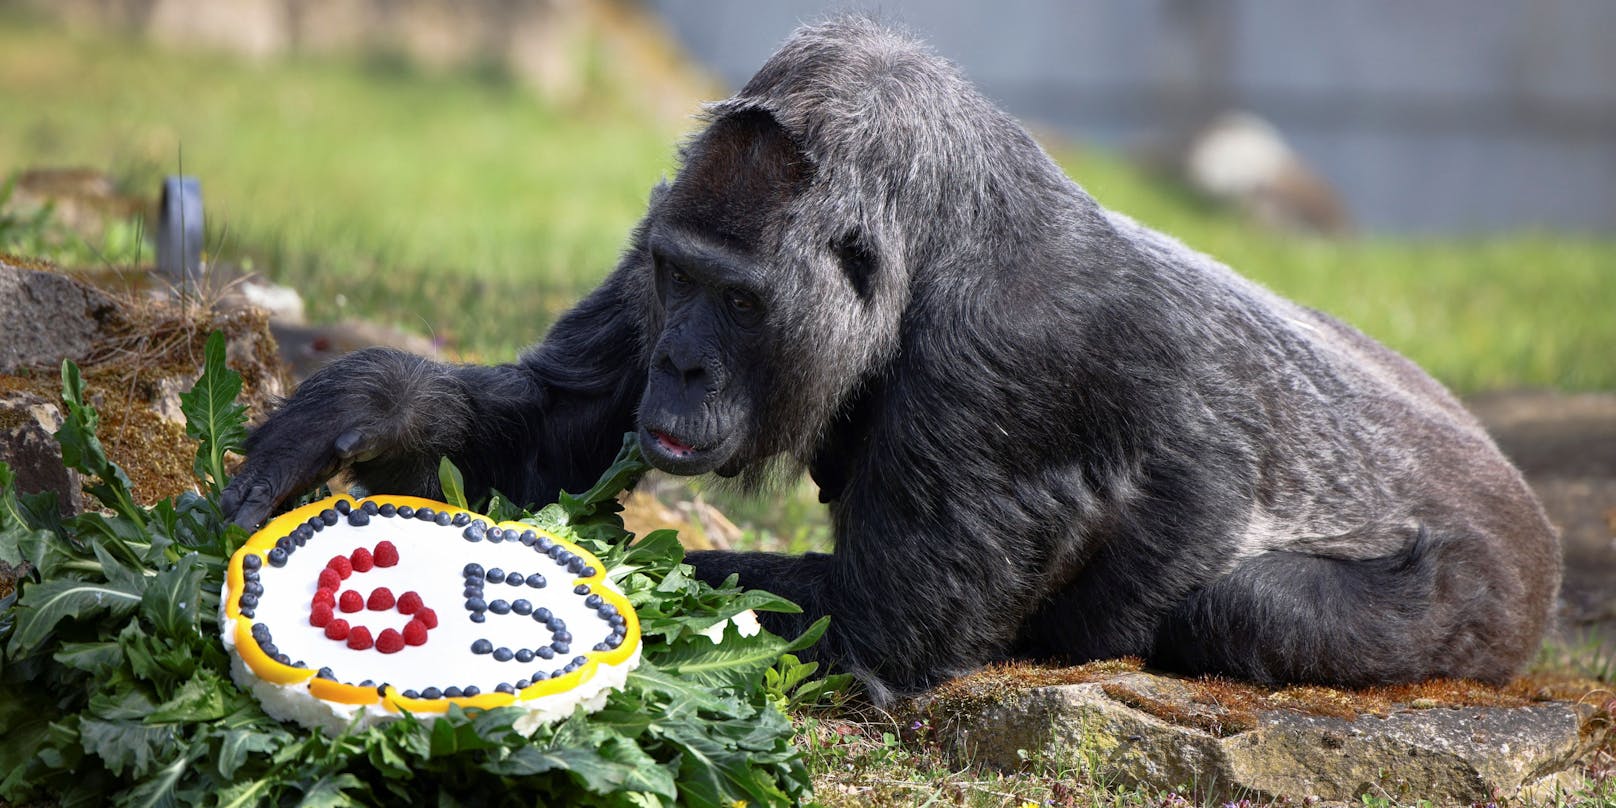 Fatou, der älteste Gorilla der Welt, bekam zu ihrem 65. Geburtstag eine Torte.